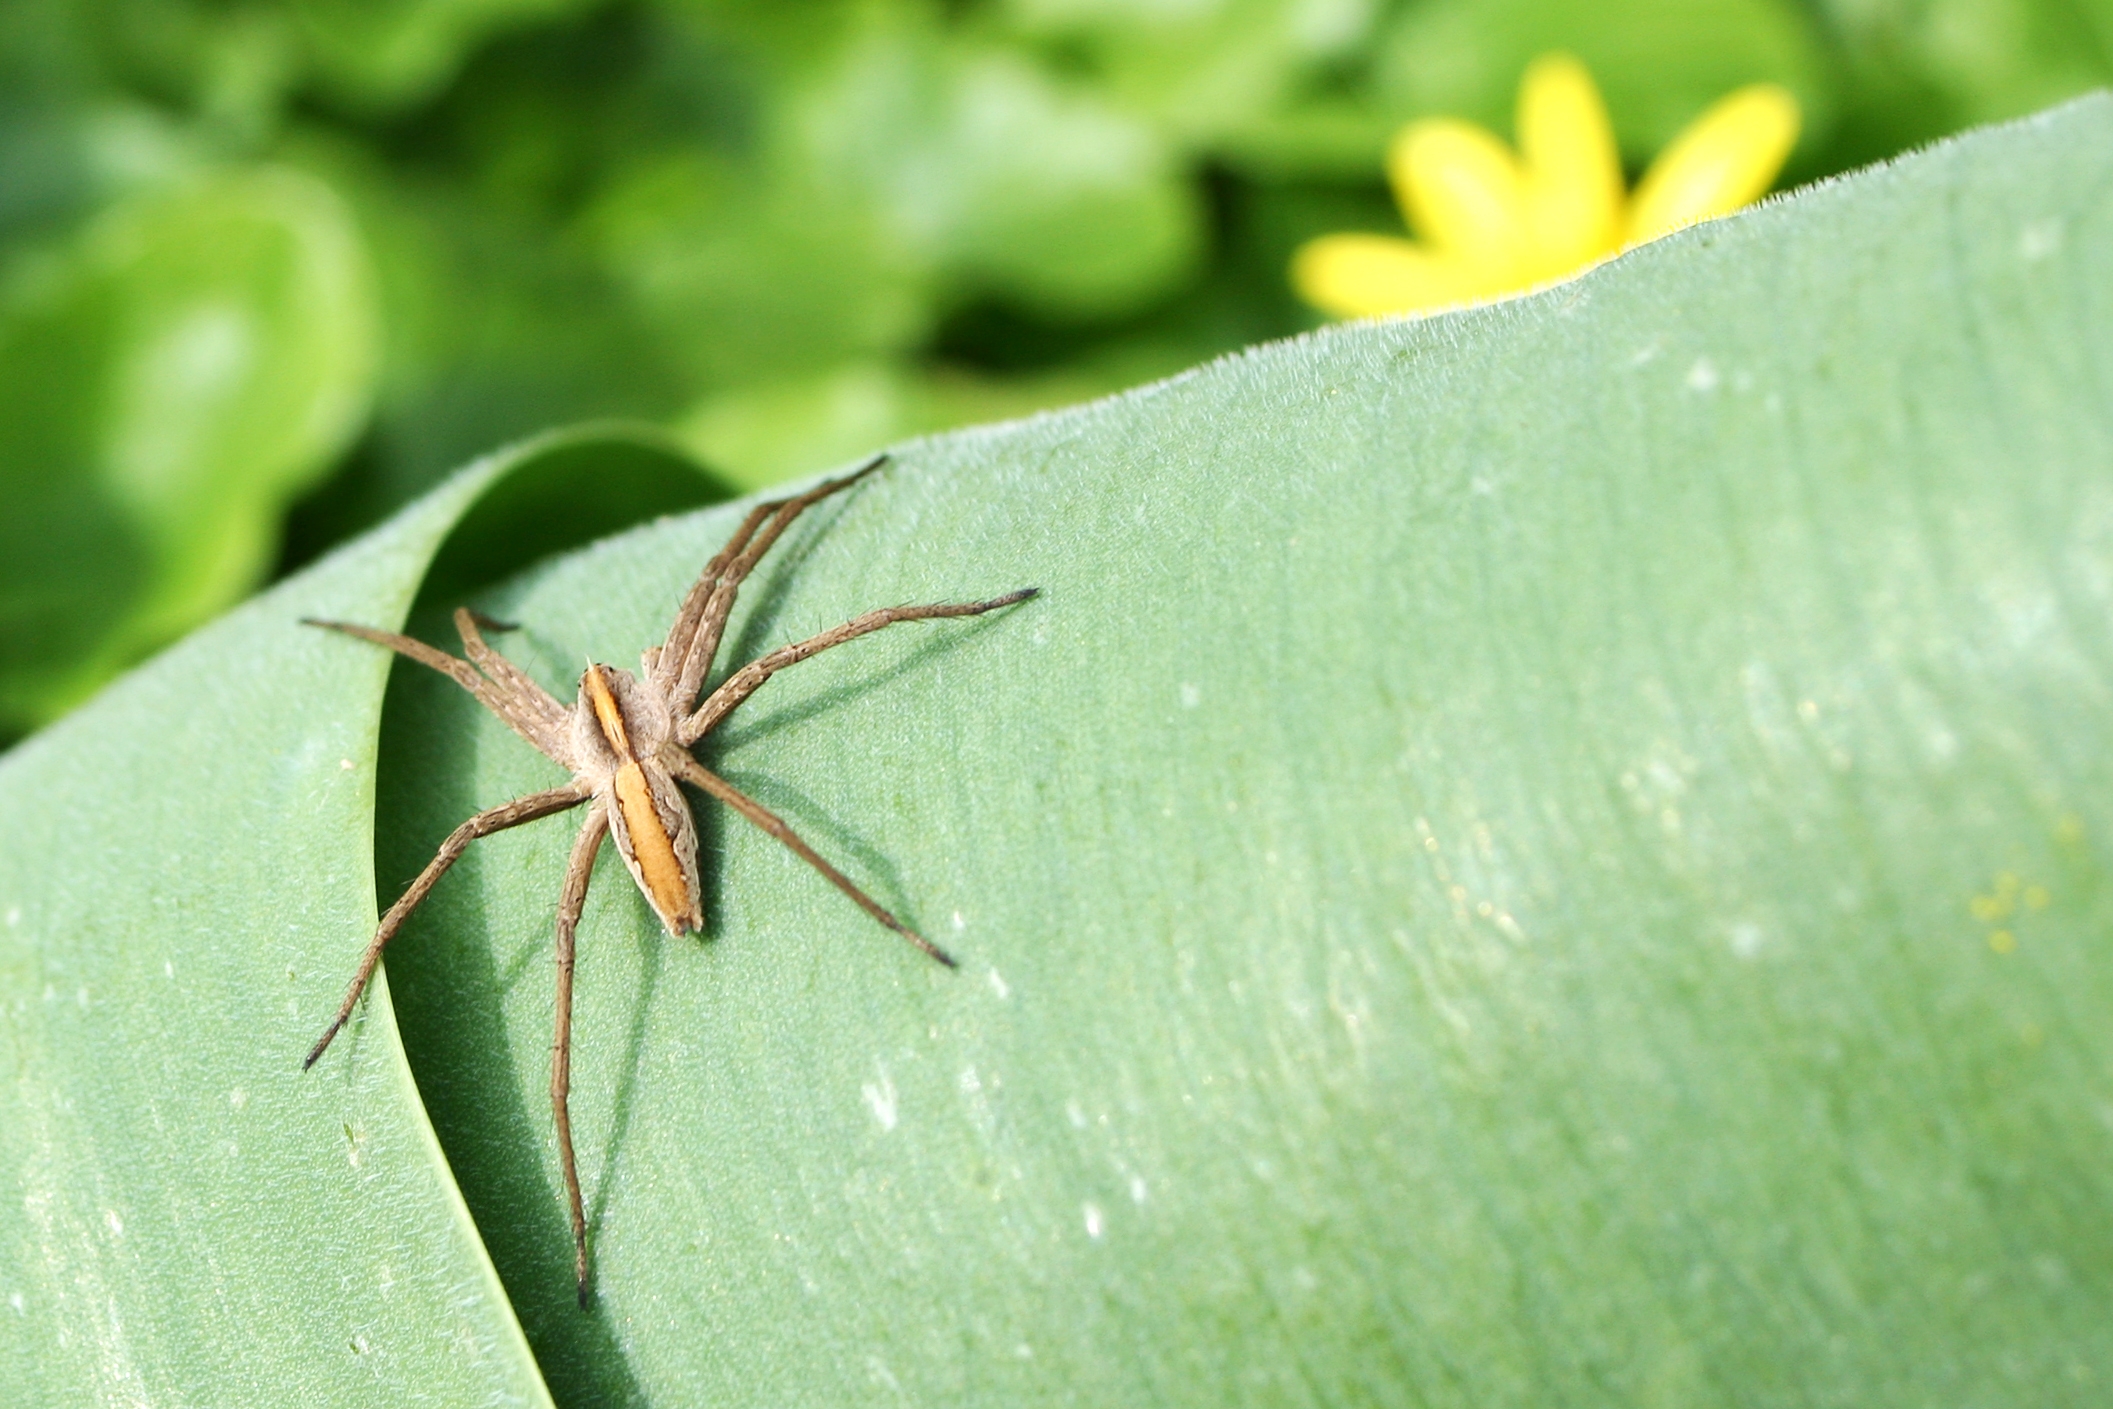 Nursery Web Spider (Pisaura mirabilis) by AngMoKio